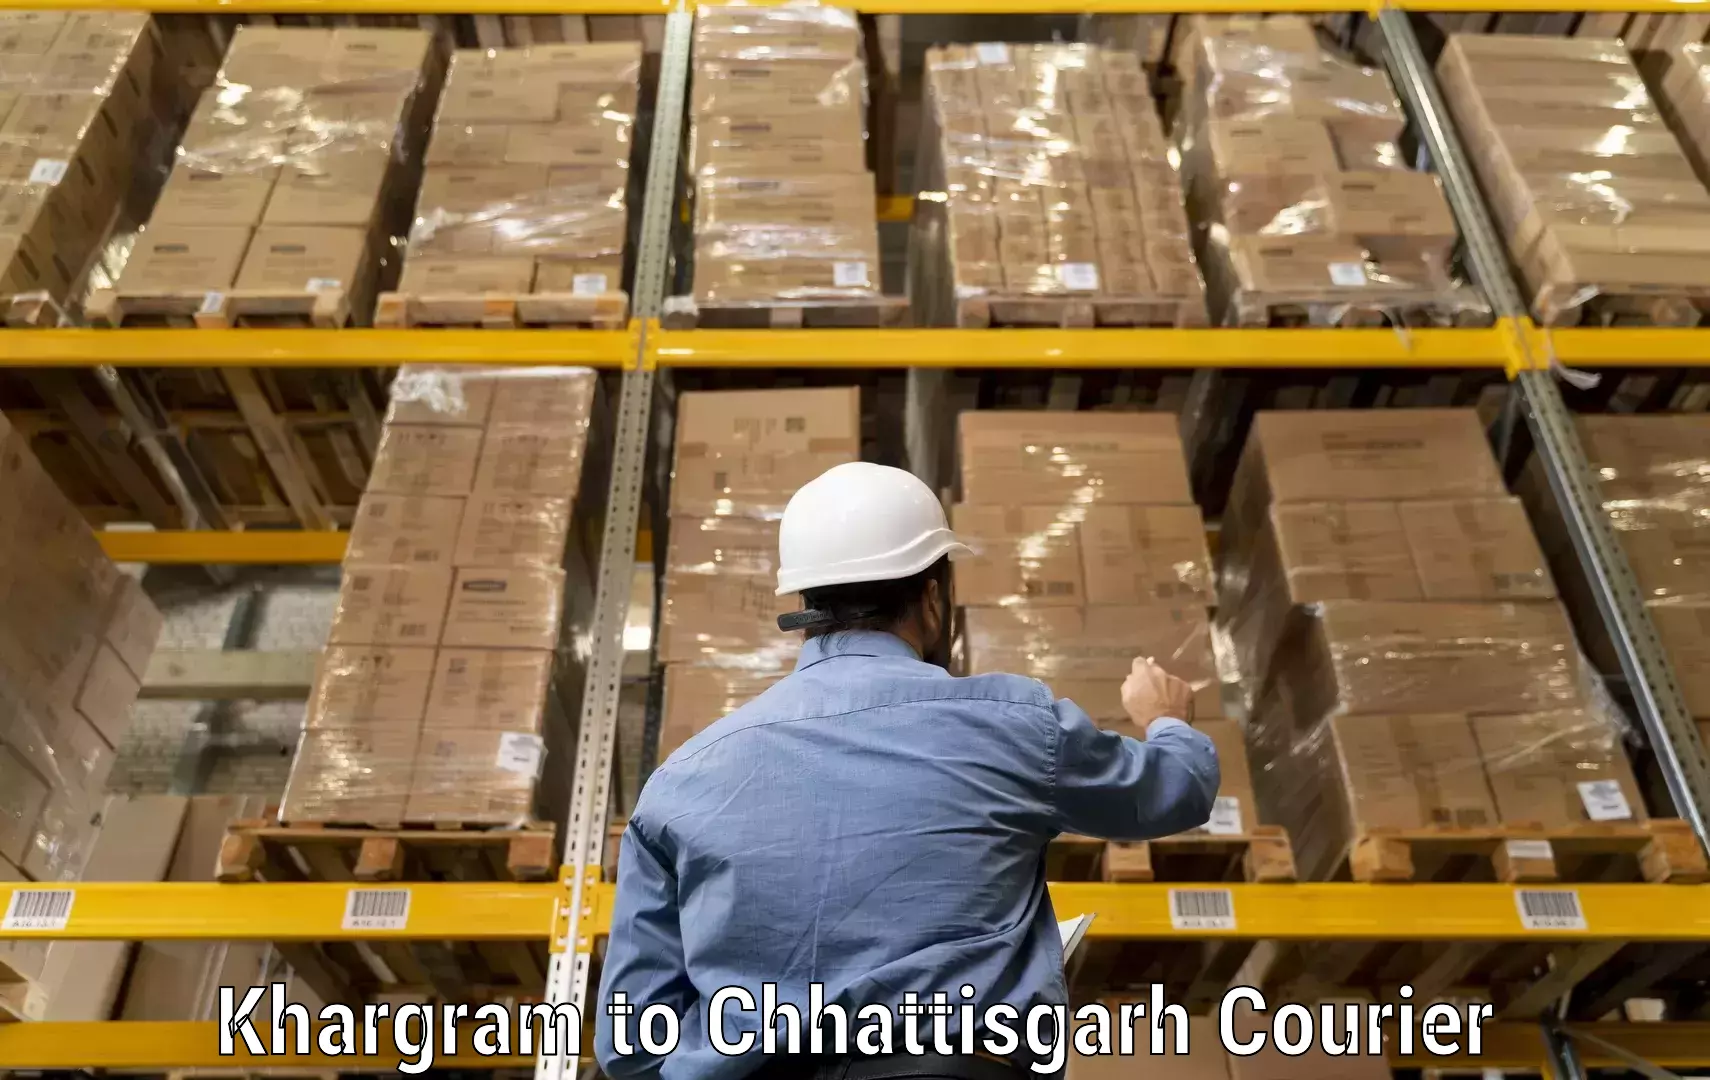 Ocean freight courier in Khargram to Bijapur Chhattisgarh